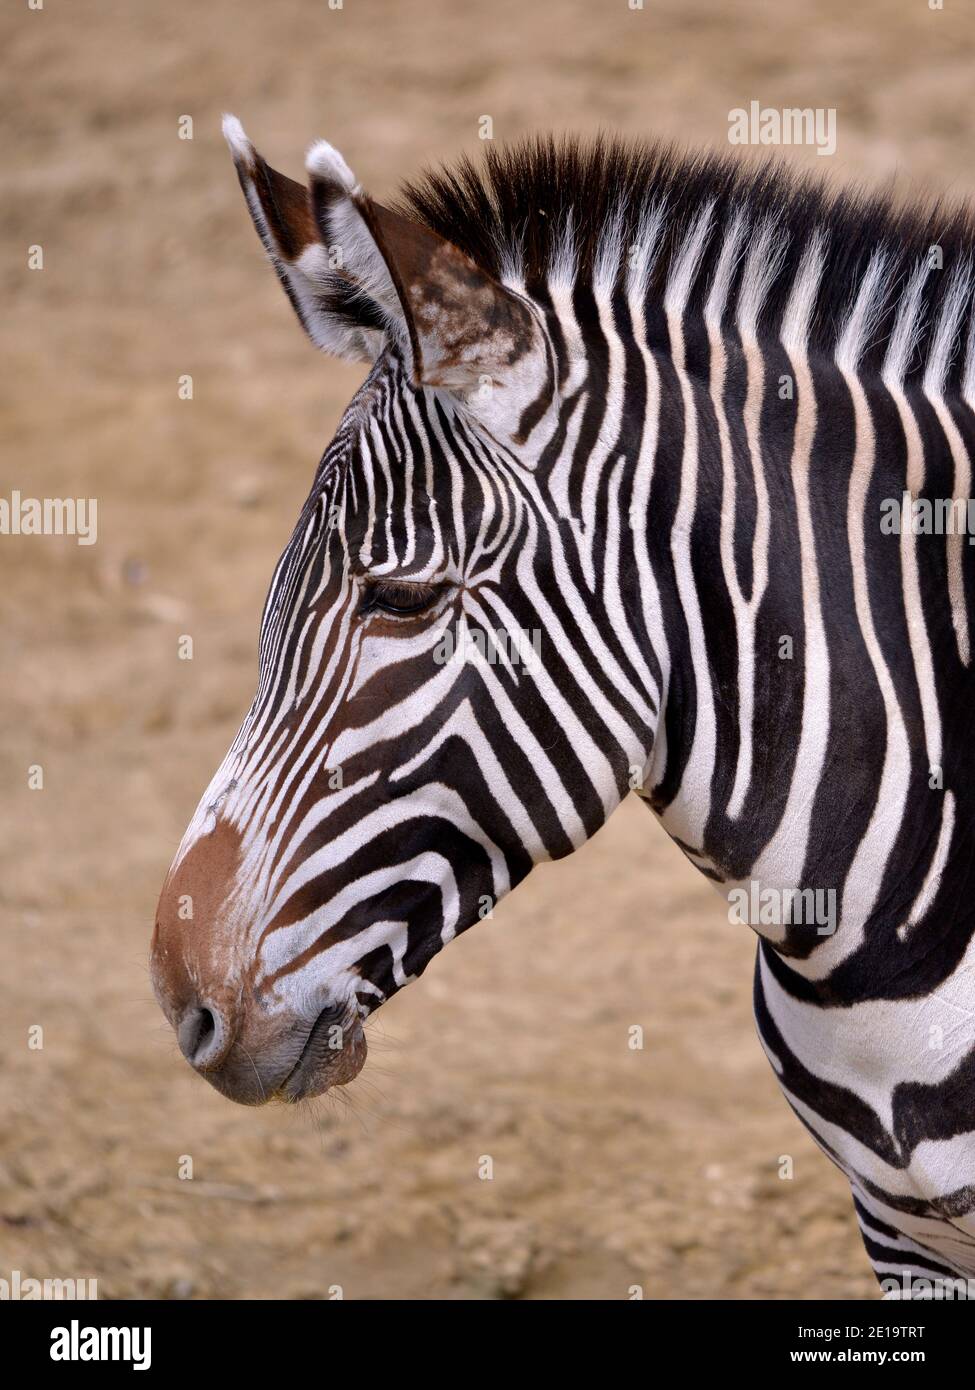 Kopf des Grevy-Zebras oder kaiserlichen Zebras (Equus grevyi) Vom Profil aus gesehen Stockfoto